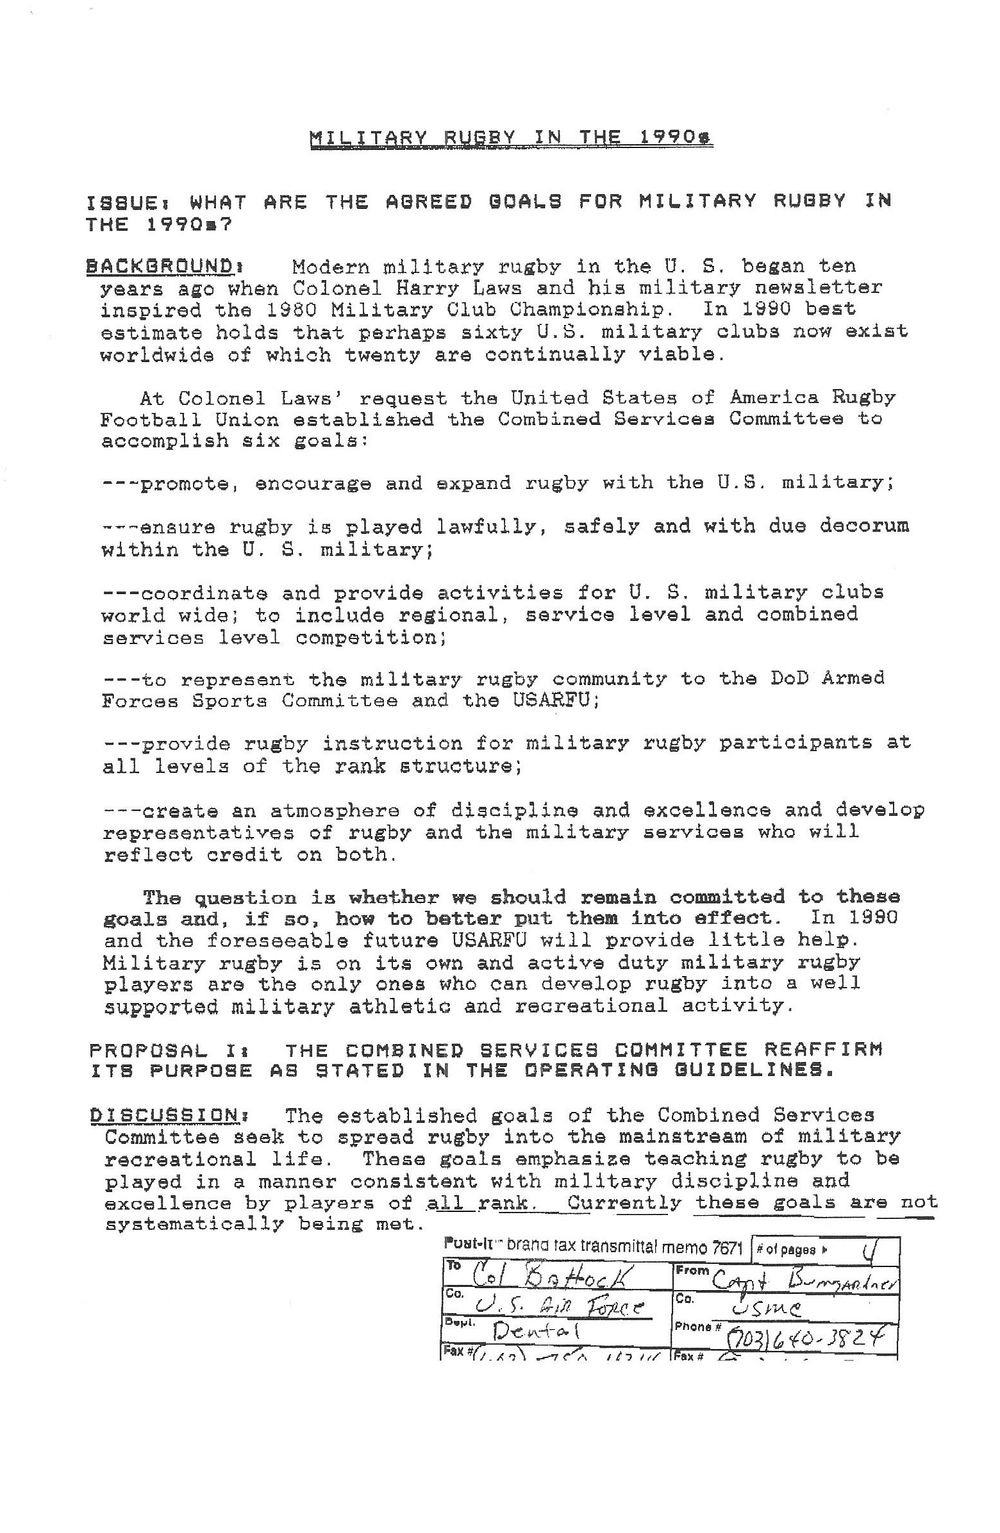 1990 agenda 3.jpg